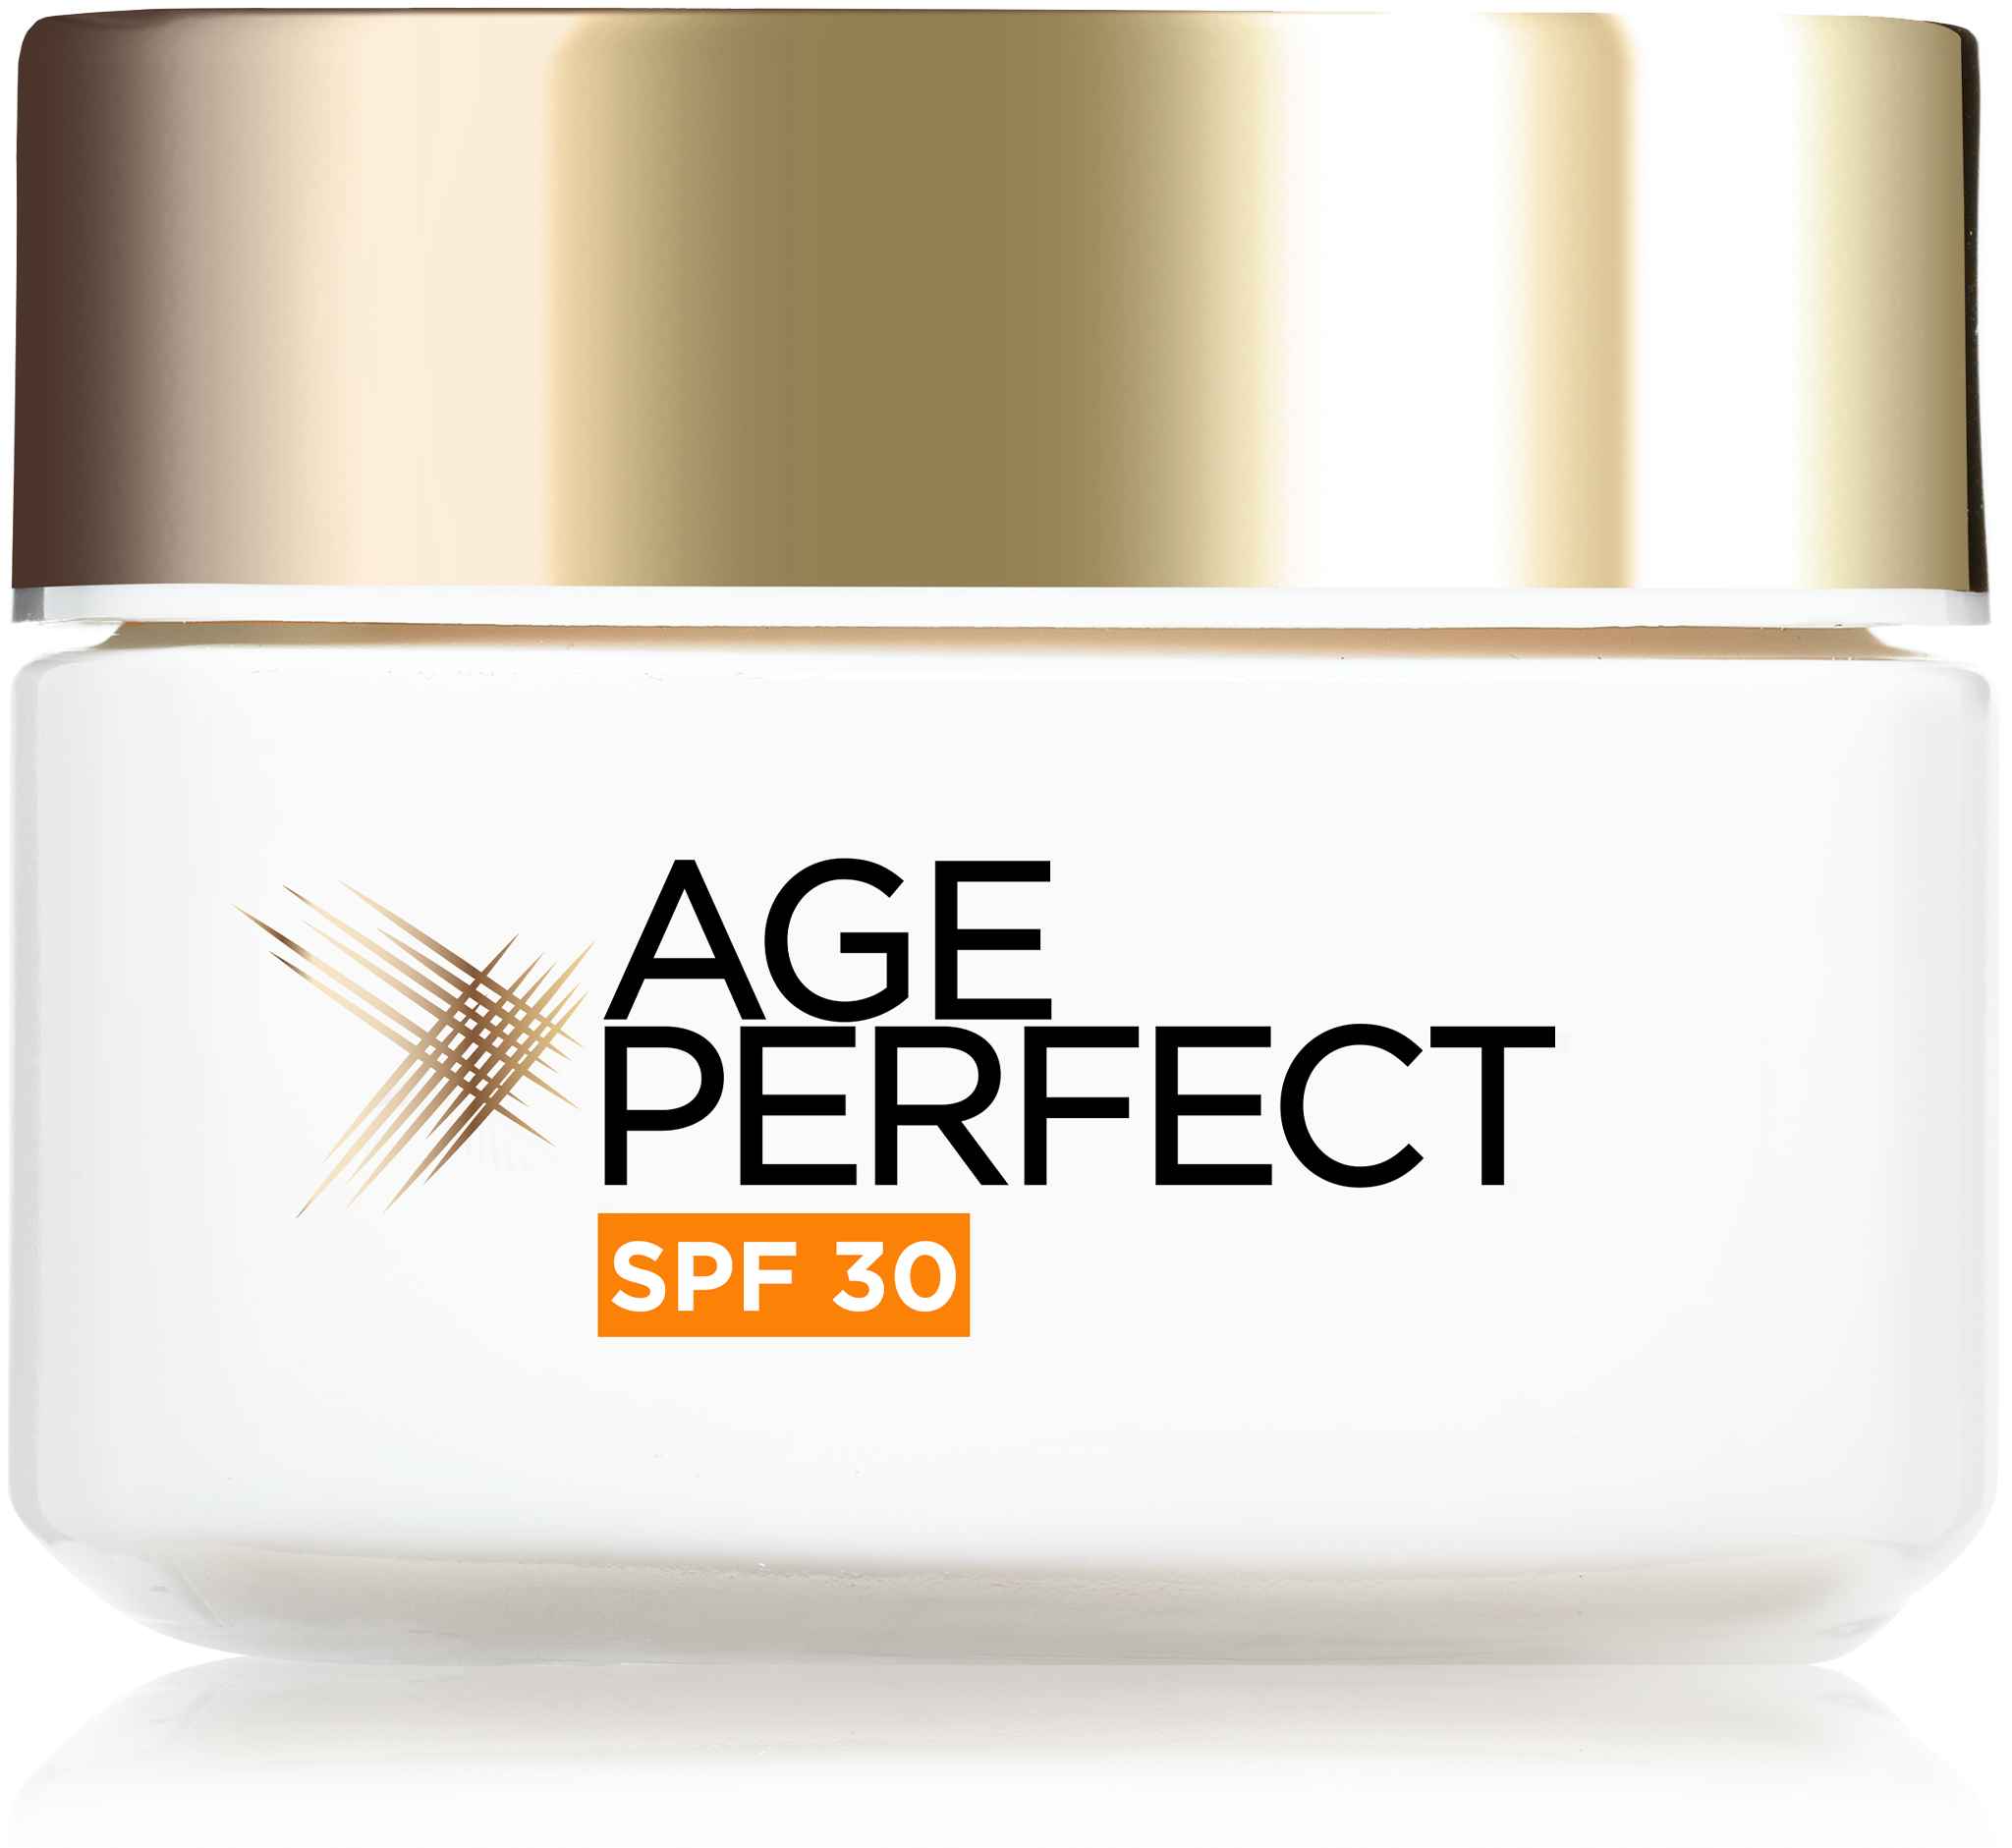 LOréal Paris Age Perfect Collagen Expert denný krém s SPF 30